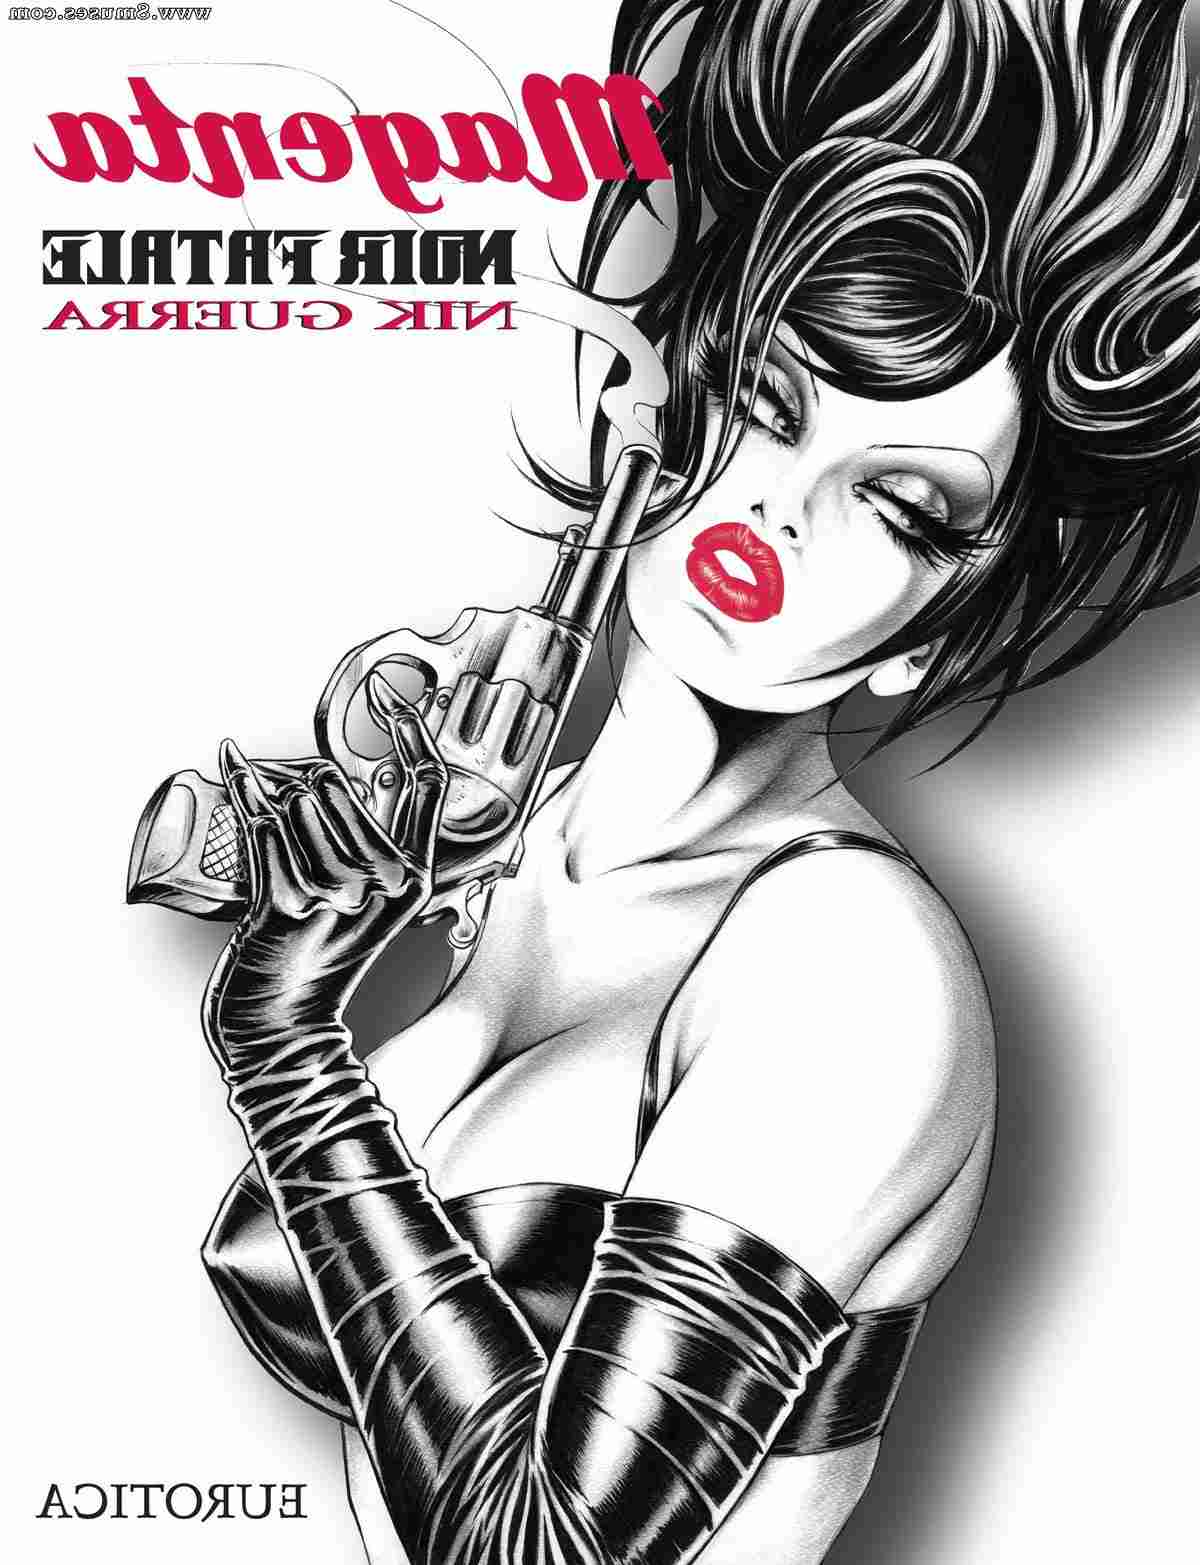 Nicola-Guerra-Comics/Noir-Fatale Noir_Fatale__8muses_-_Sex_and_Porn_Comics.jpg